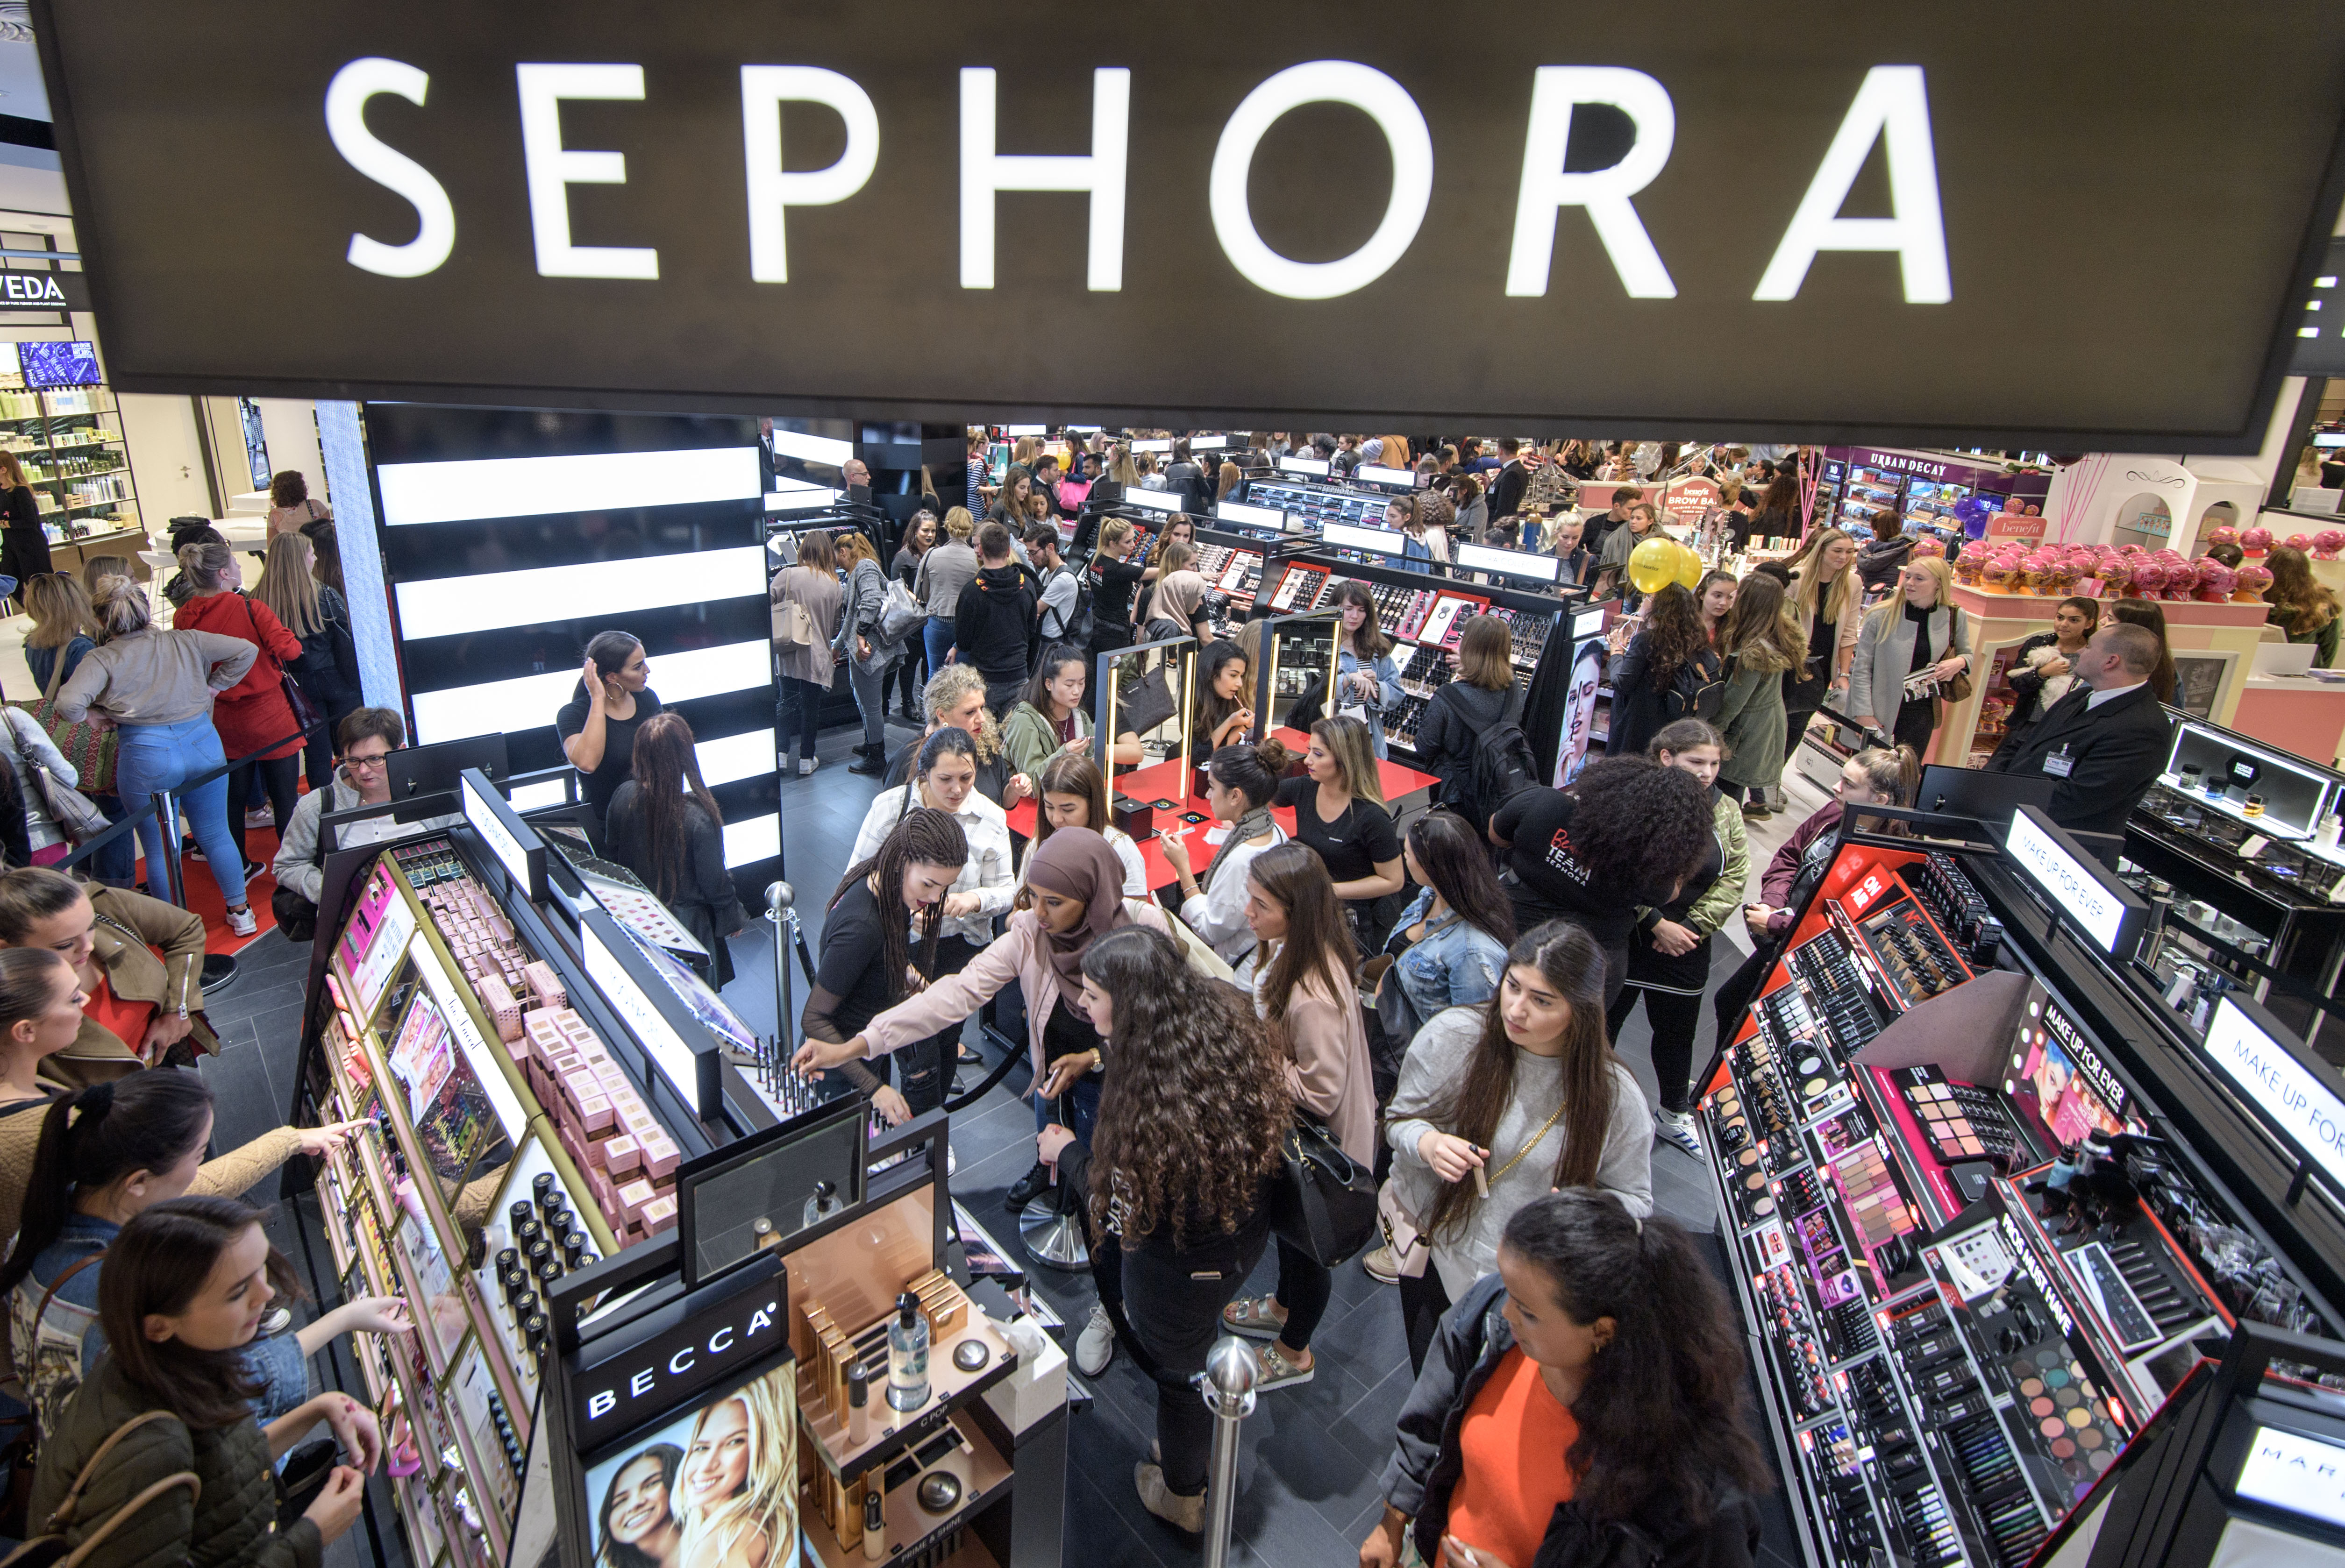 Sephora ist ein Beauty-Einzelhandelsriese, der erst 2022 sein erstes Geschäft in Großbritannien eröffnete